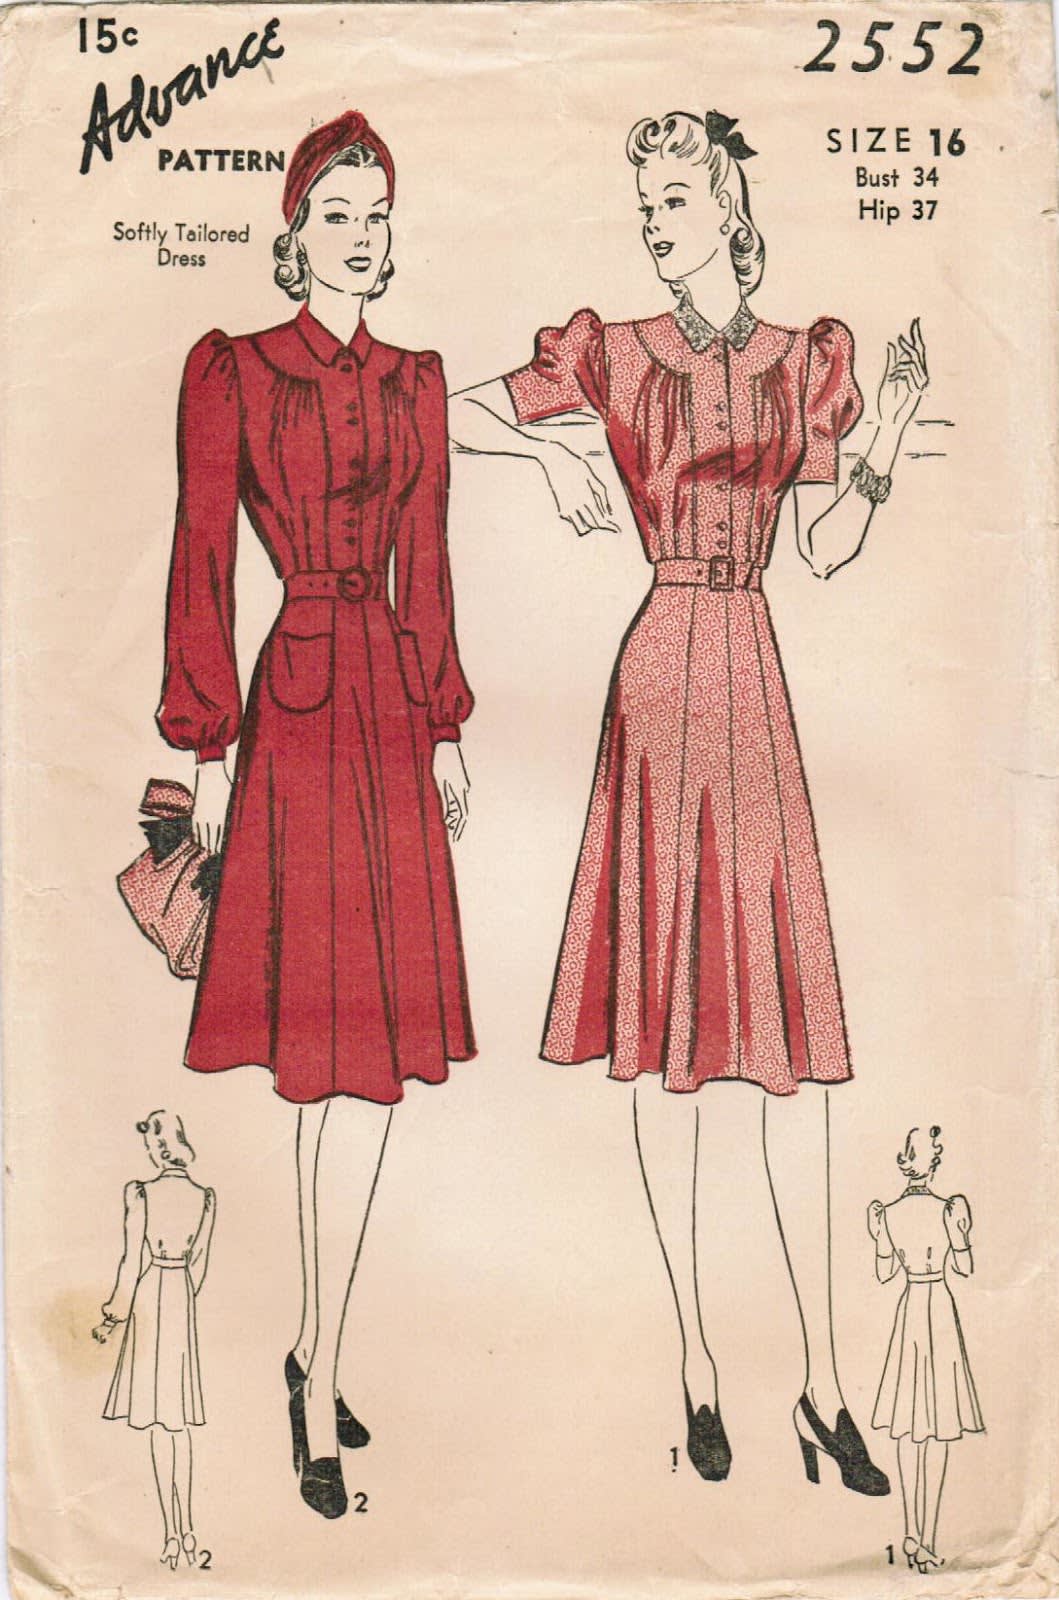 Post-war new look dress patterns 